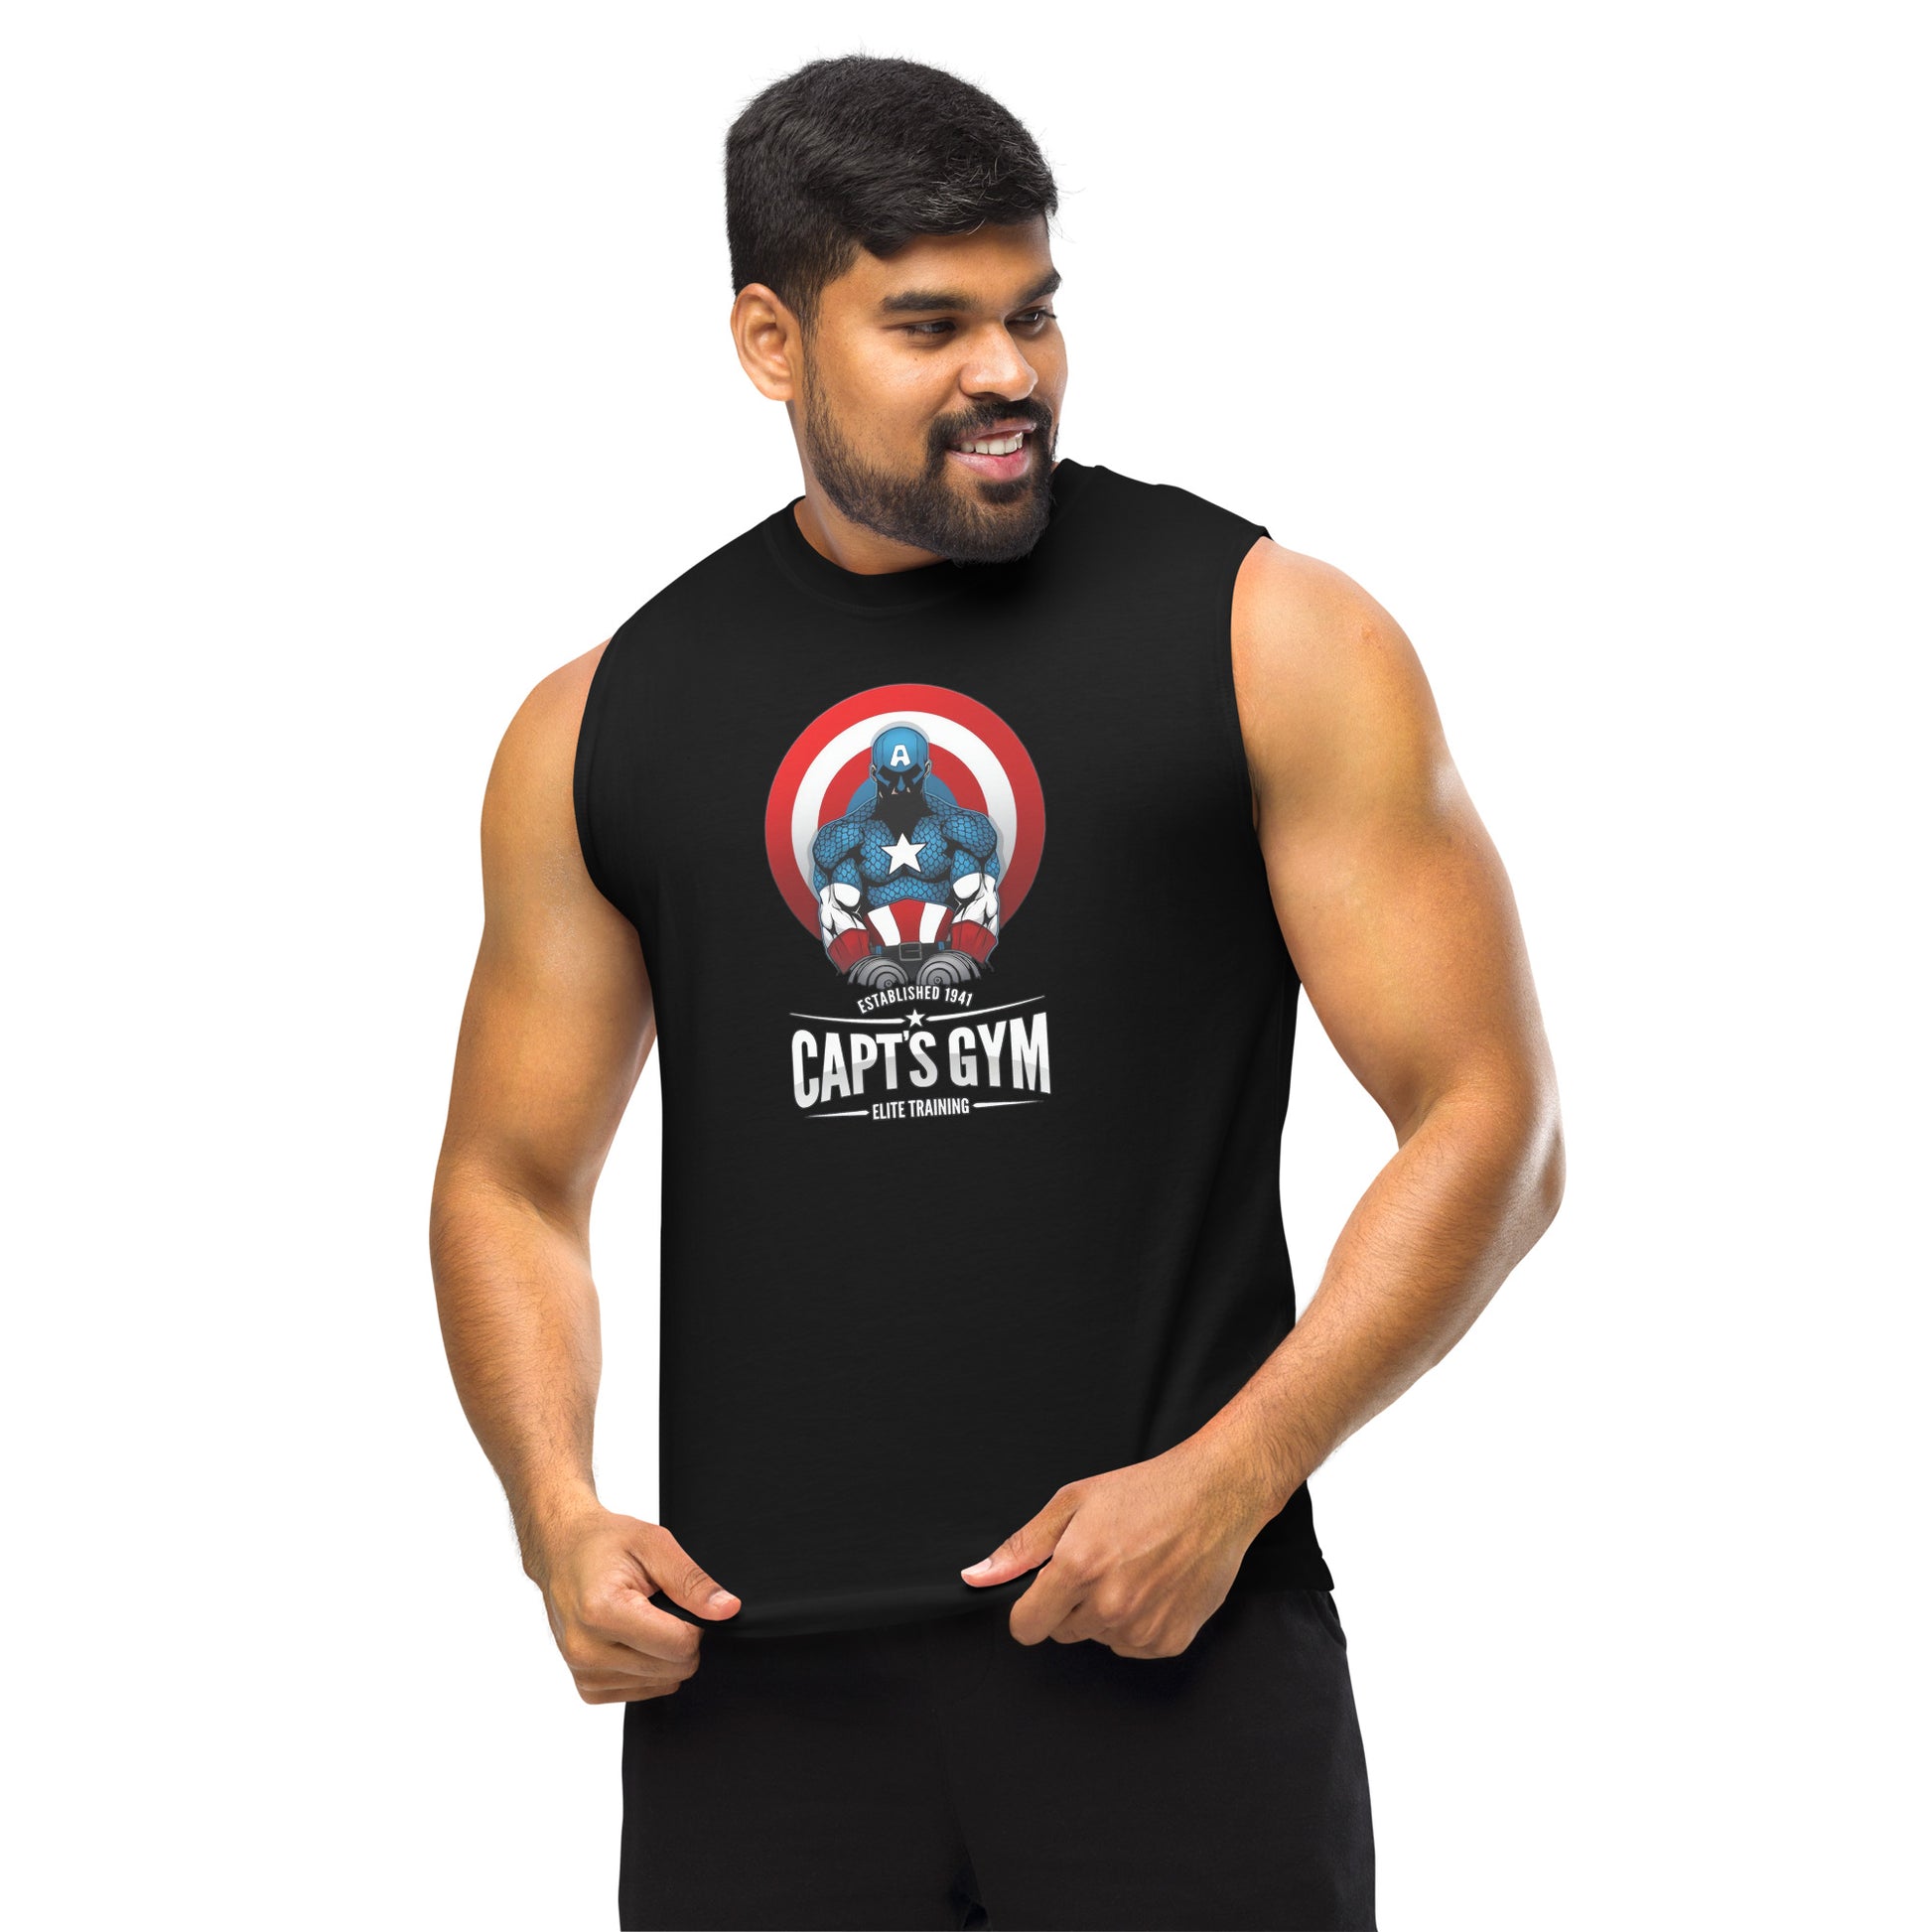 Camiseta sin mangas perfecta para entrenar, Camiseta Capts Gym comprala en línea y experimenta el mejor servicio al cliente. envíos internacionales.